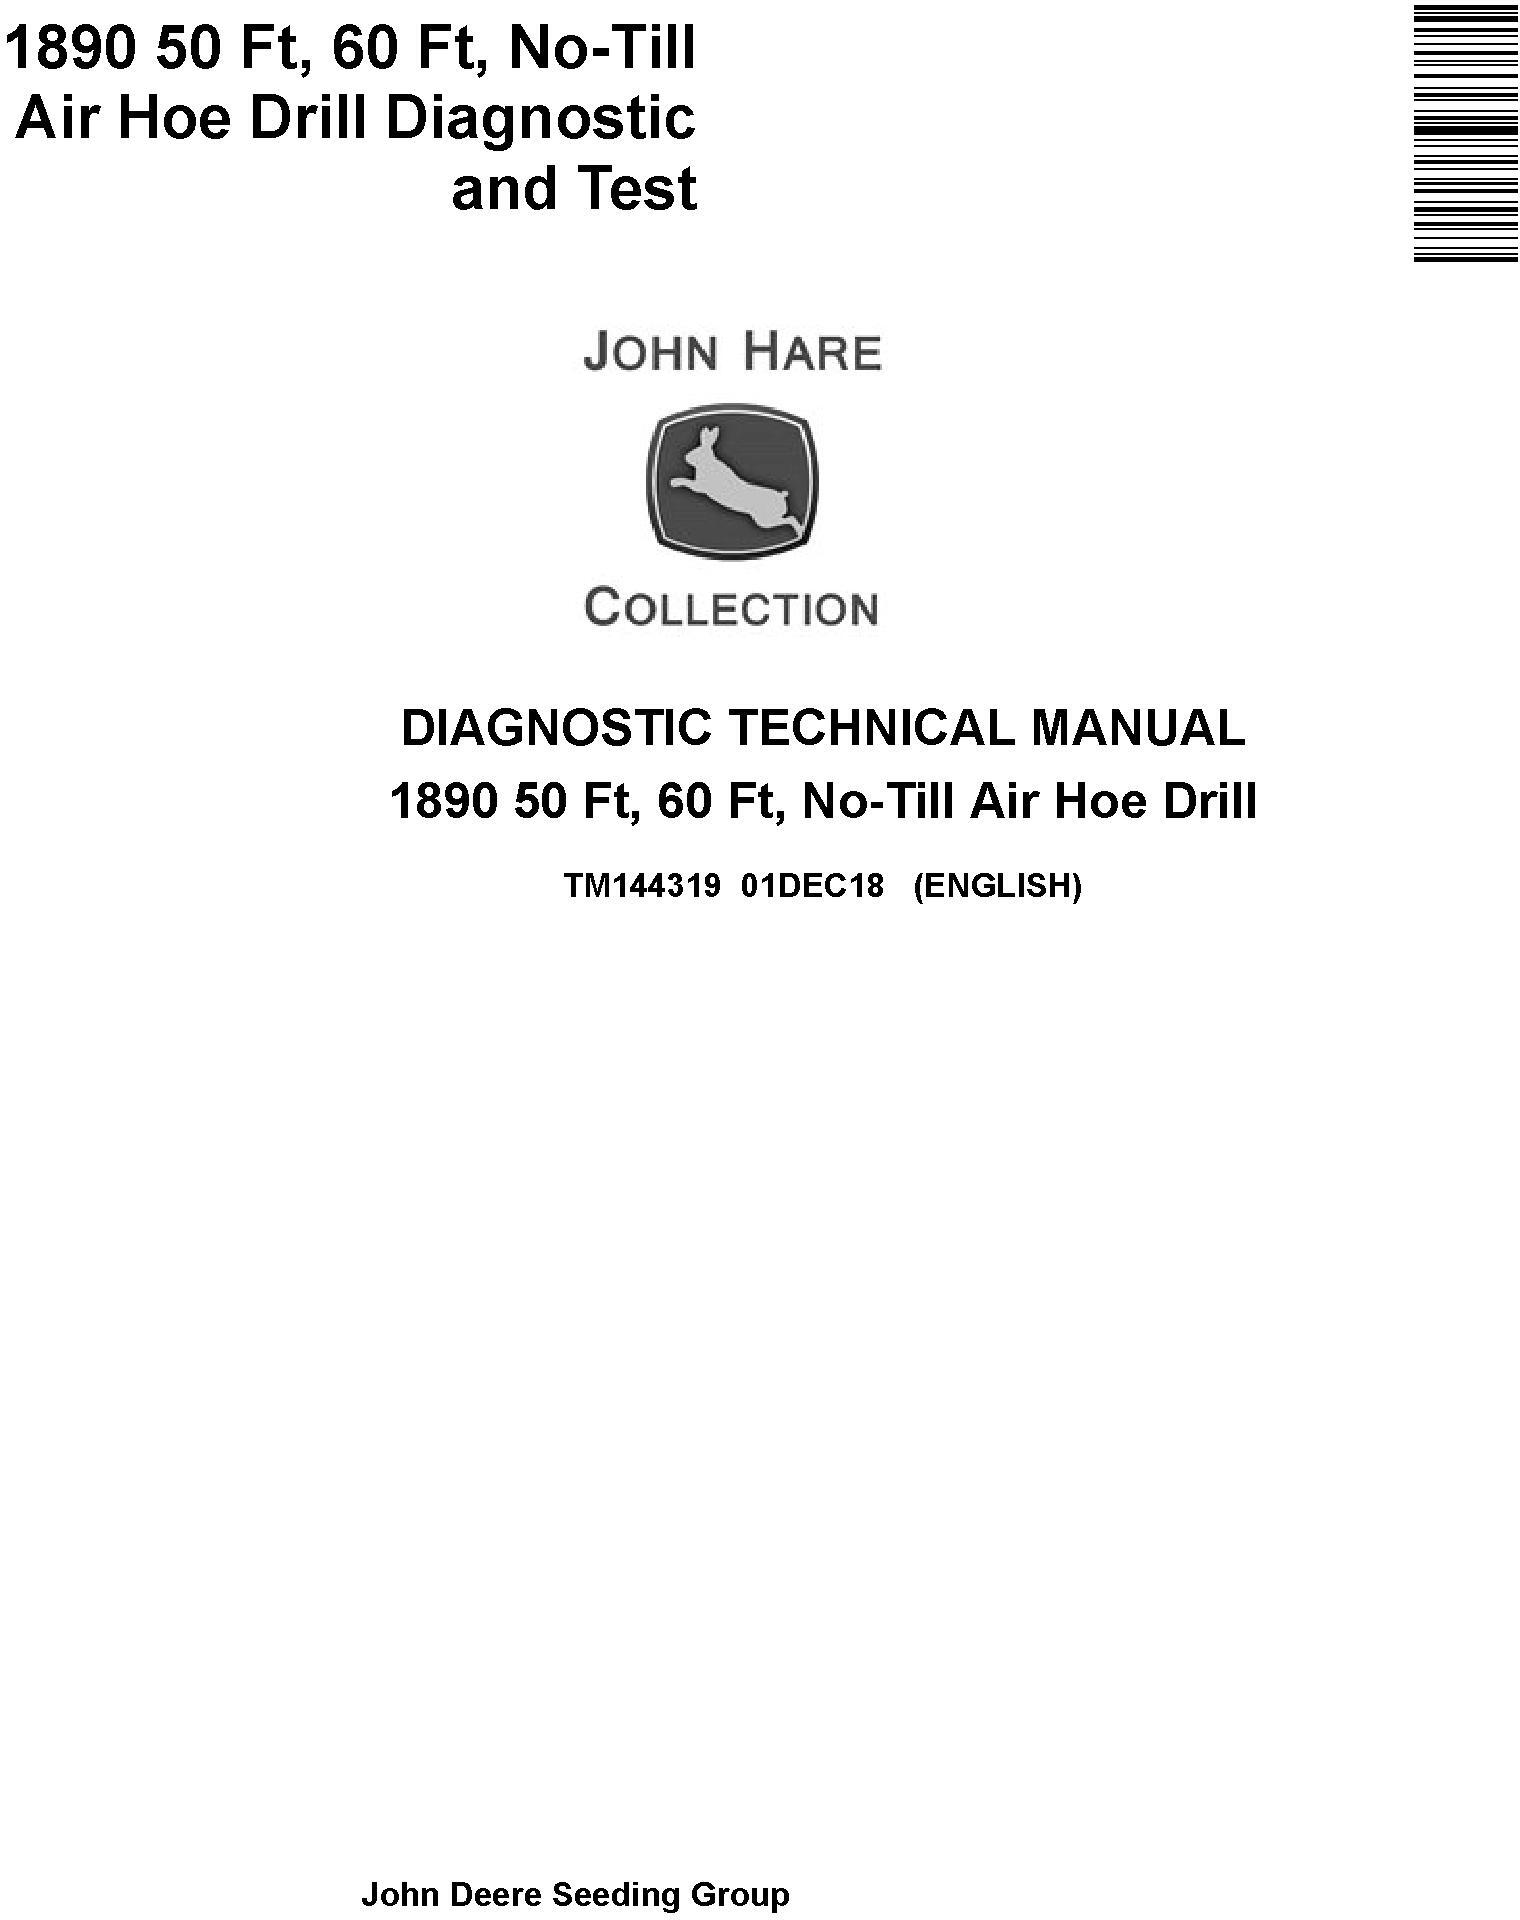 John Deere 1890 50 Ft 60 Ft No-Till Air Hoe Drill Diagnostic Test Manual TM144319